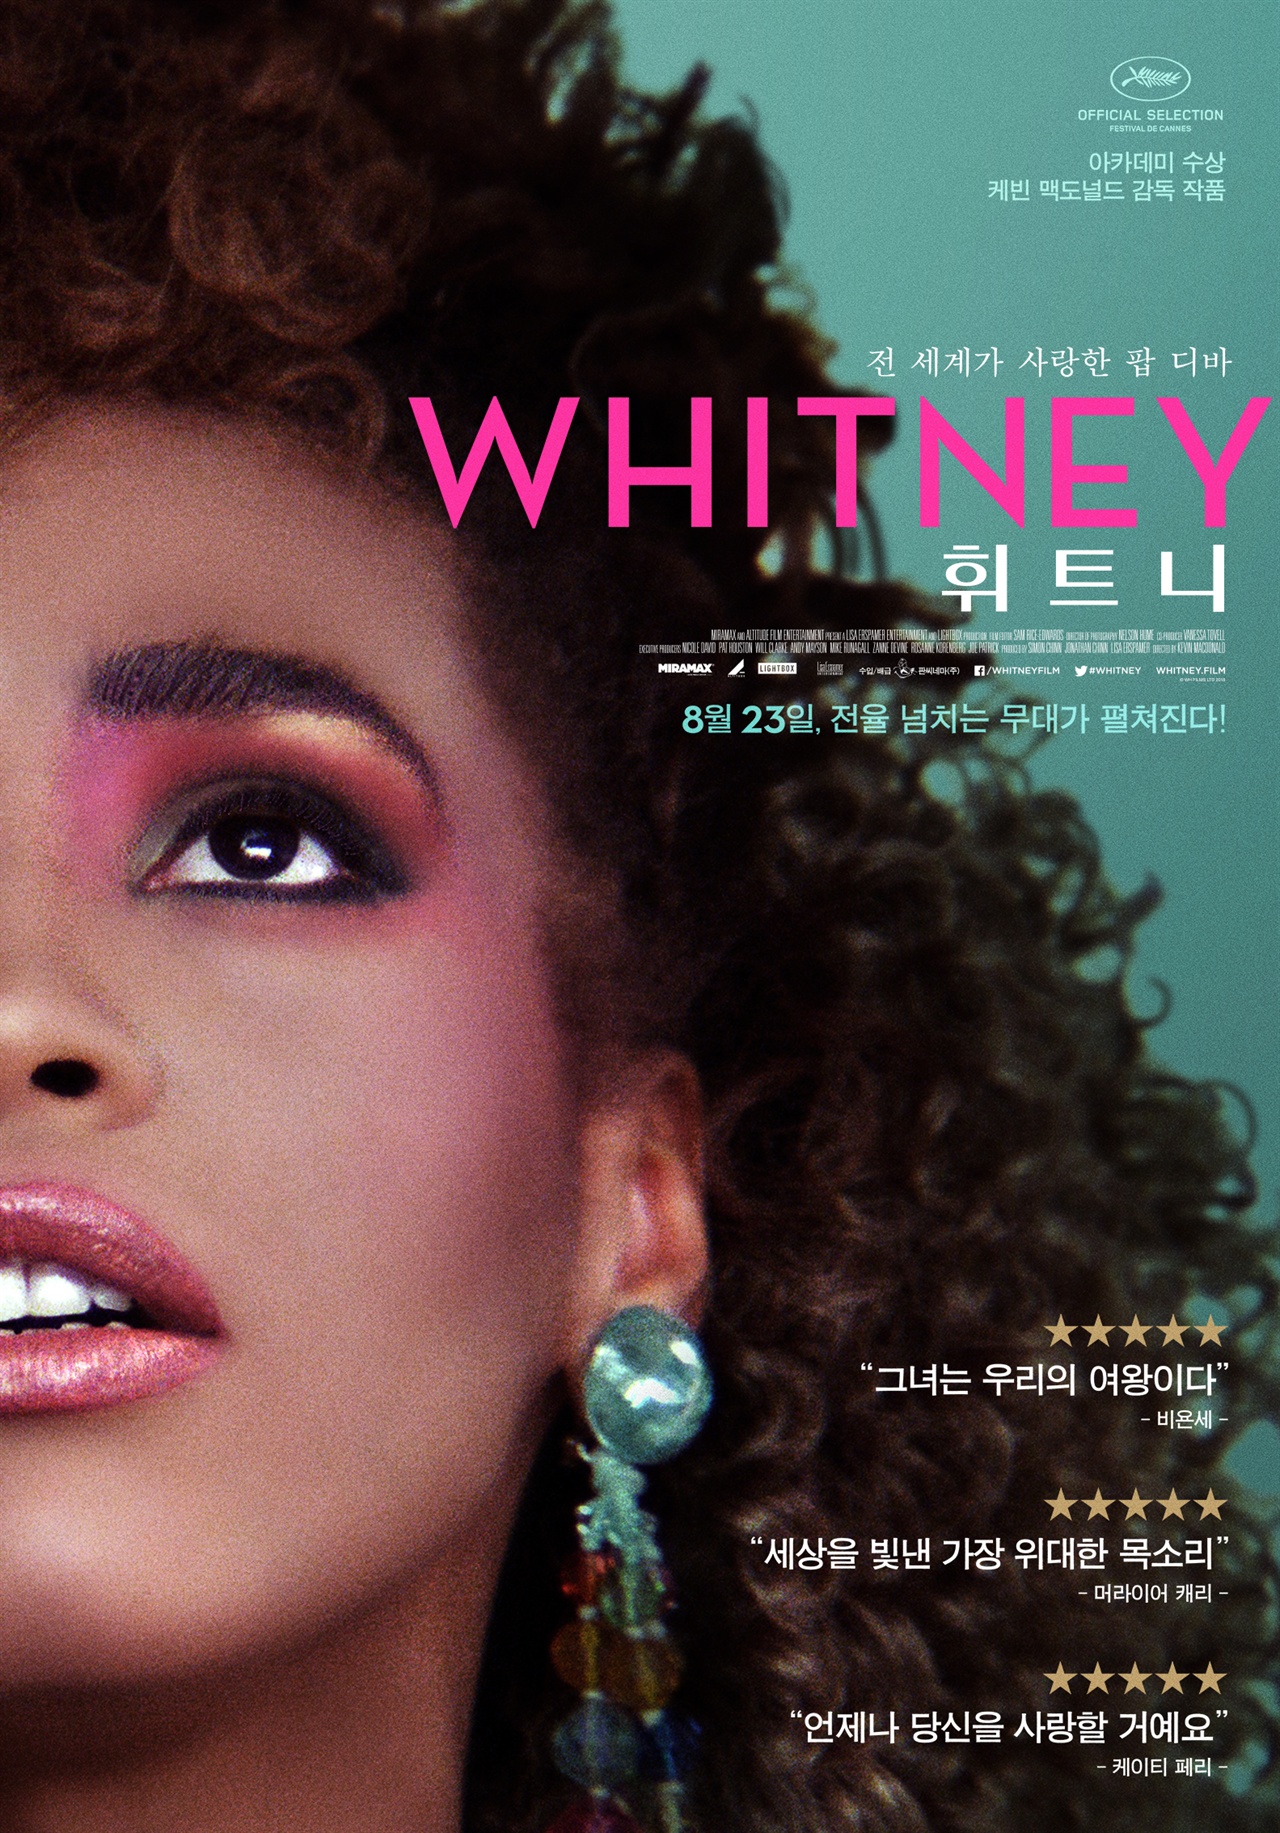  <휘트니>는 휘트니 휴스턴이 가장 아름답게 빛났던 시절, 그리고 무대 뒤에서 고통받았던 순간들을 가감없이 기록한 작품이다.